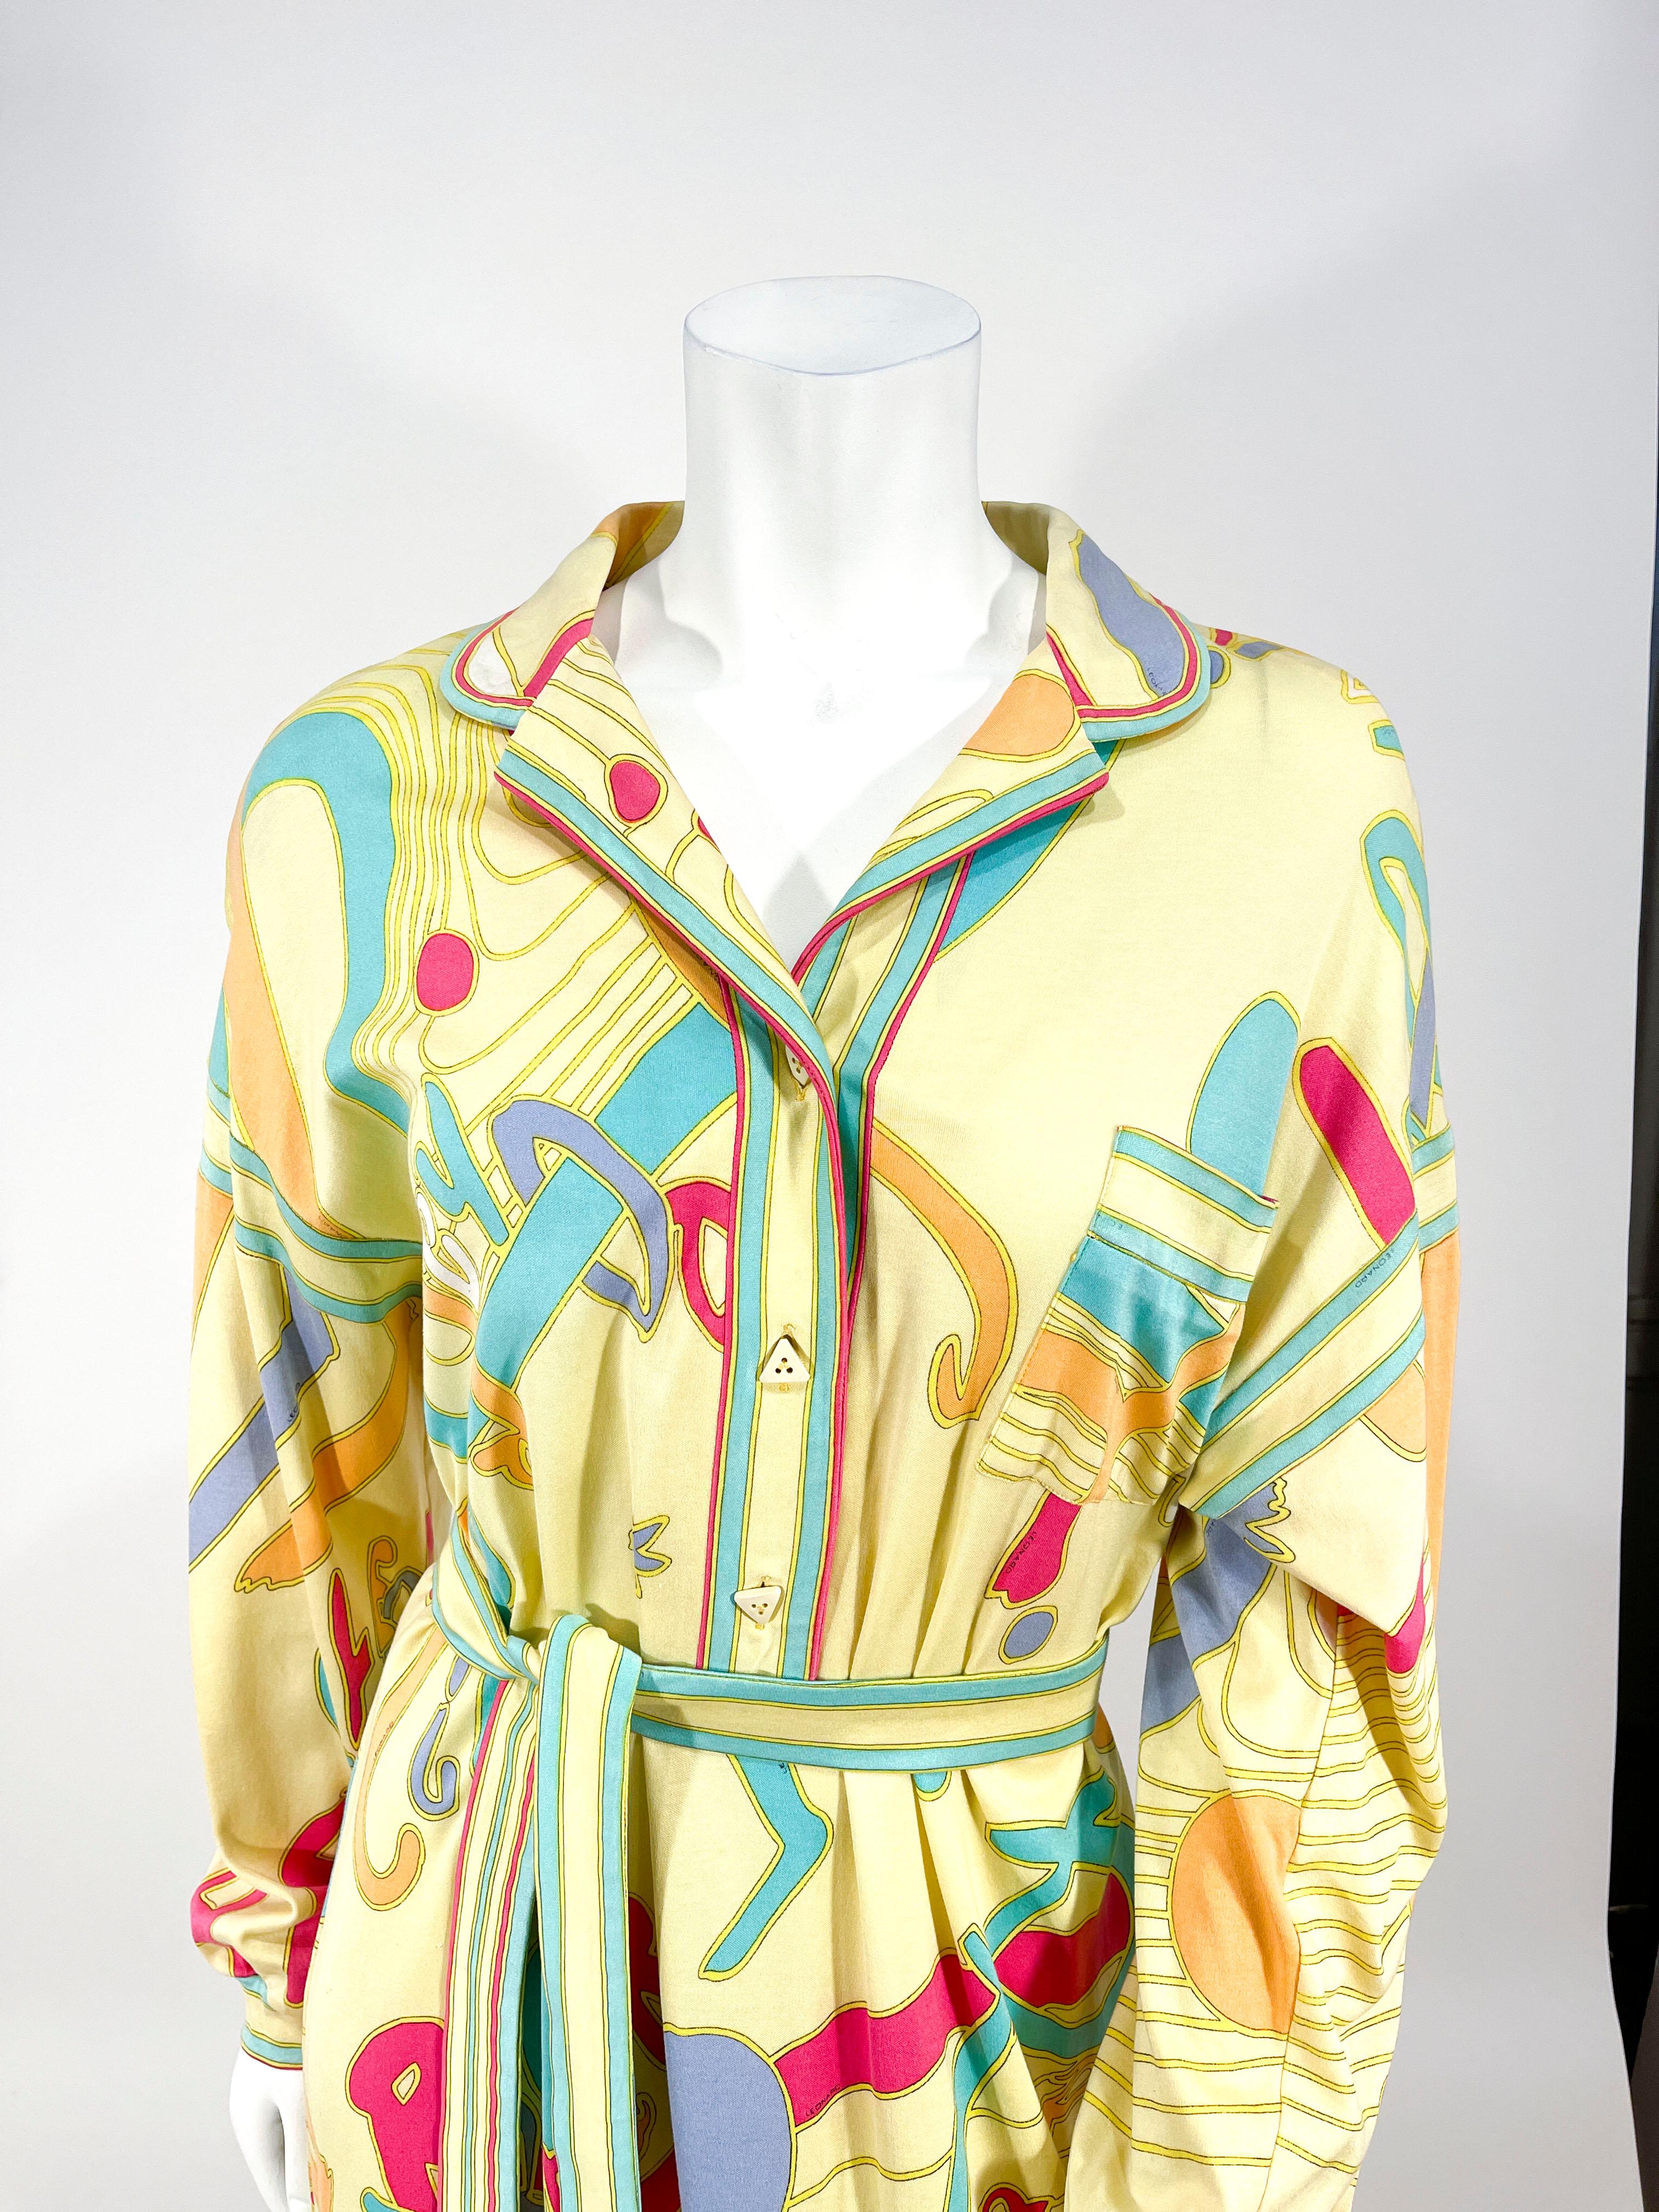 Robe en jersey imprimé Leonard de la fin des années 1970 au début des années 1980. L'imprimé présente des pastels sur des nuances de jaune avec un motif typographique. La Silhouette présente une encolure boutonnée avec des boutons spéciaux, des